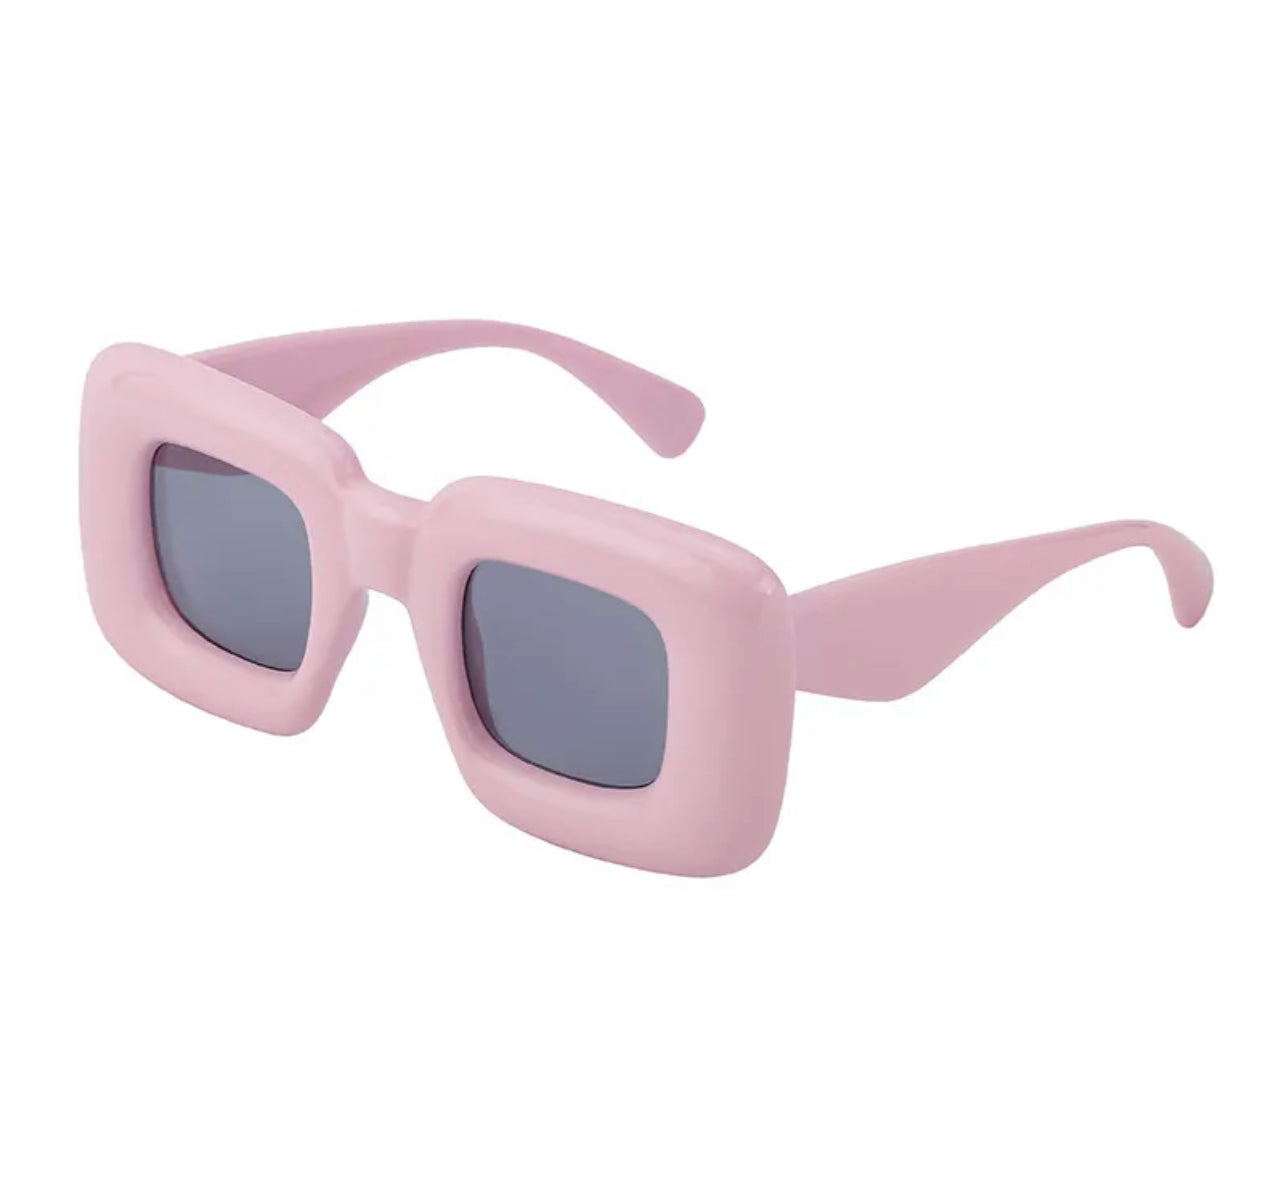 New Girl Retro Square Sunglasses